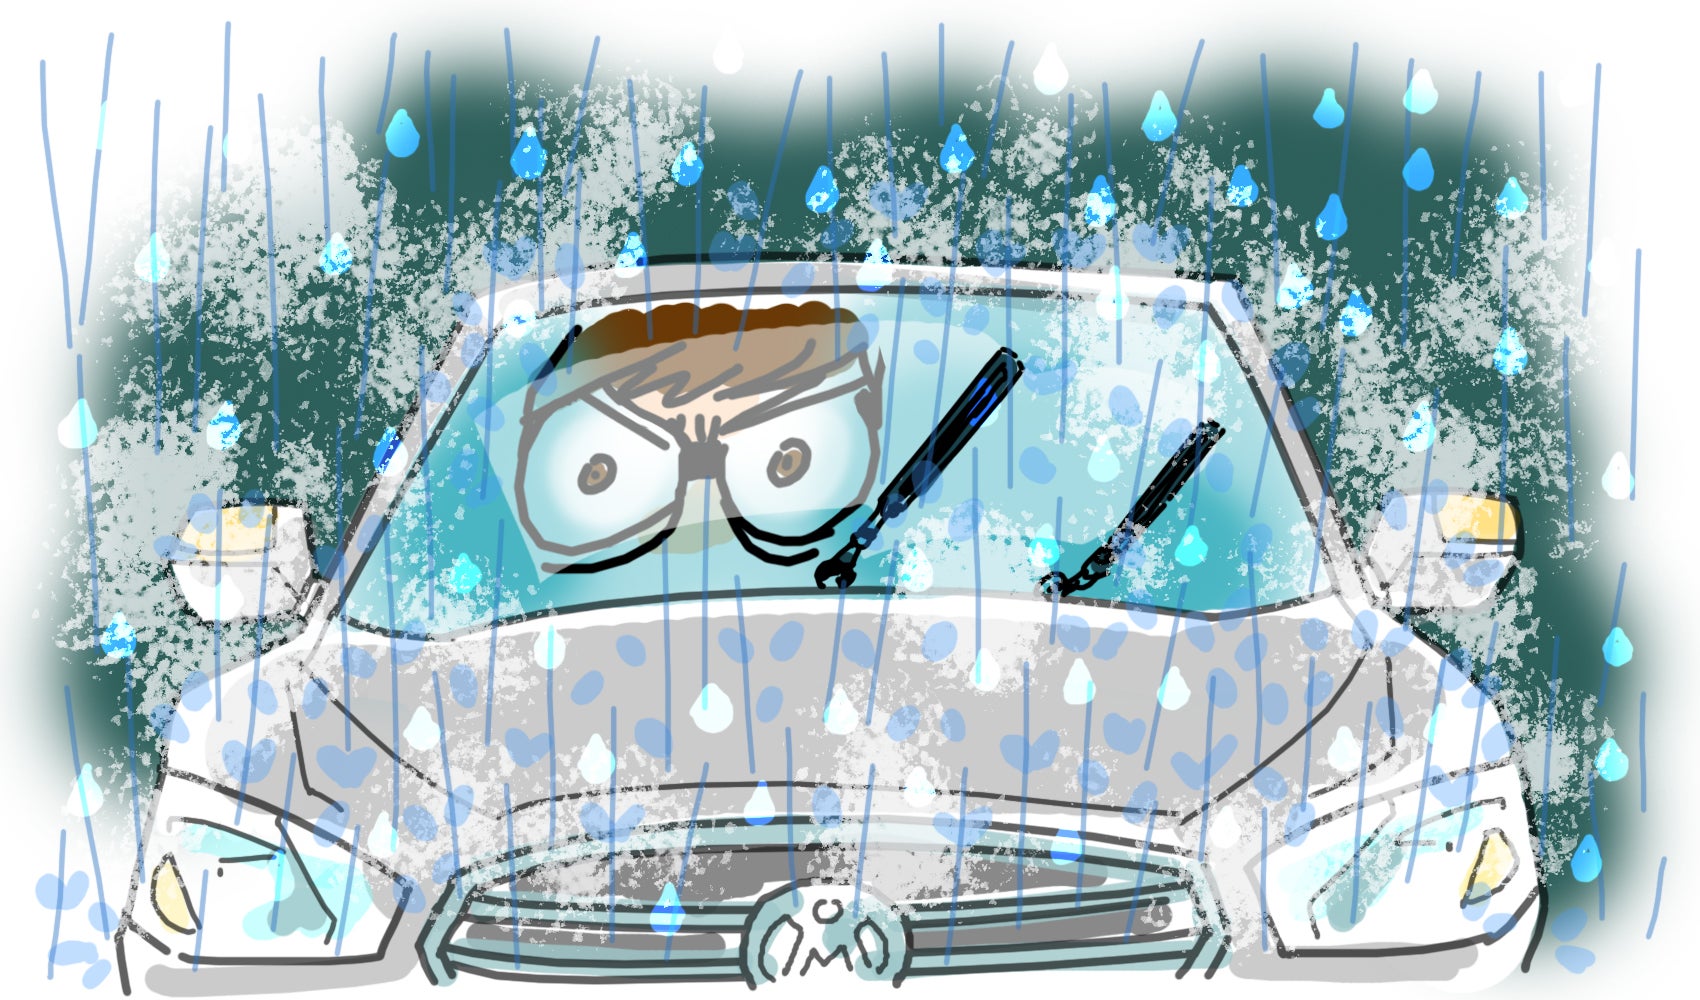  雨の日の運転は視界が妨げられる